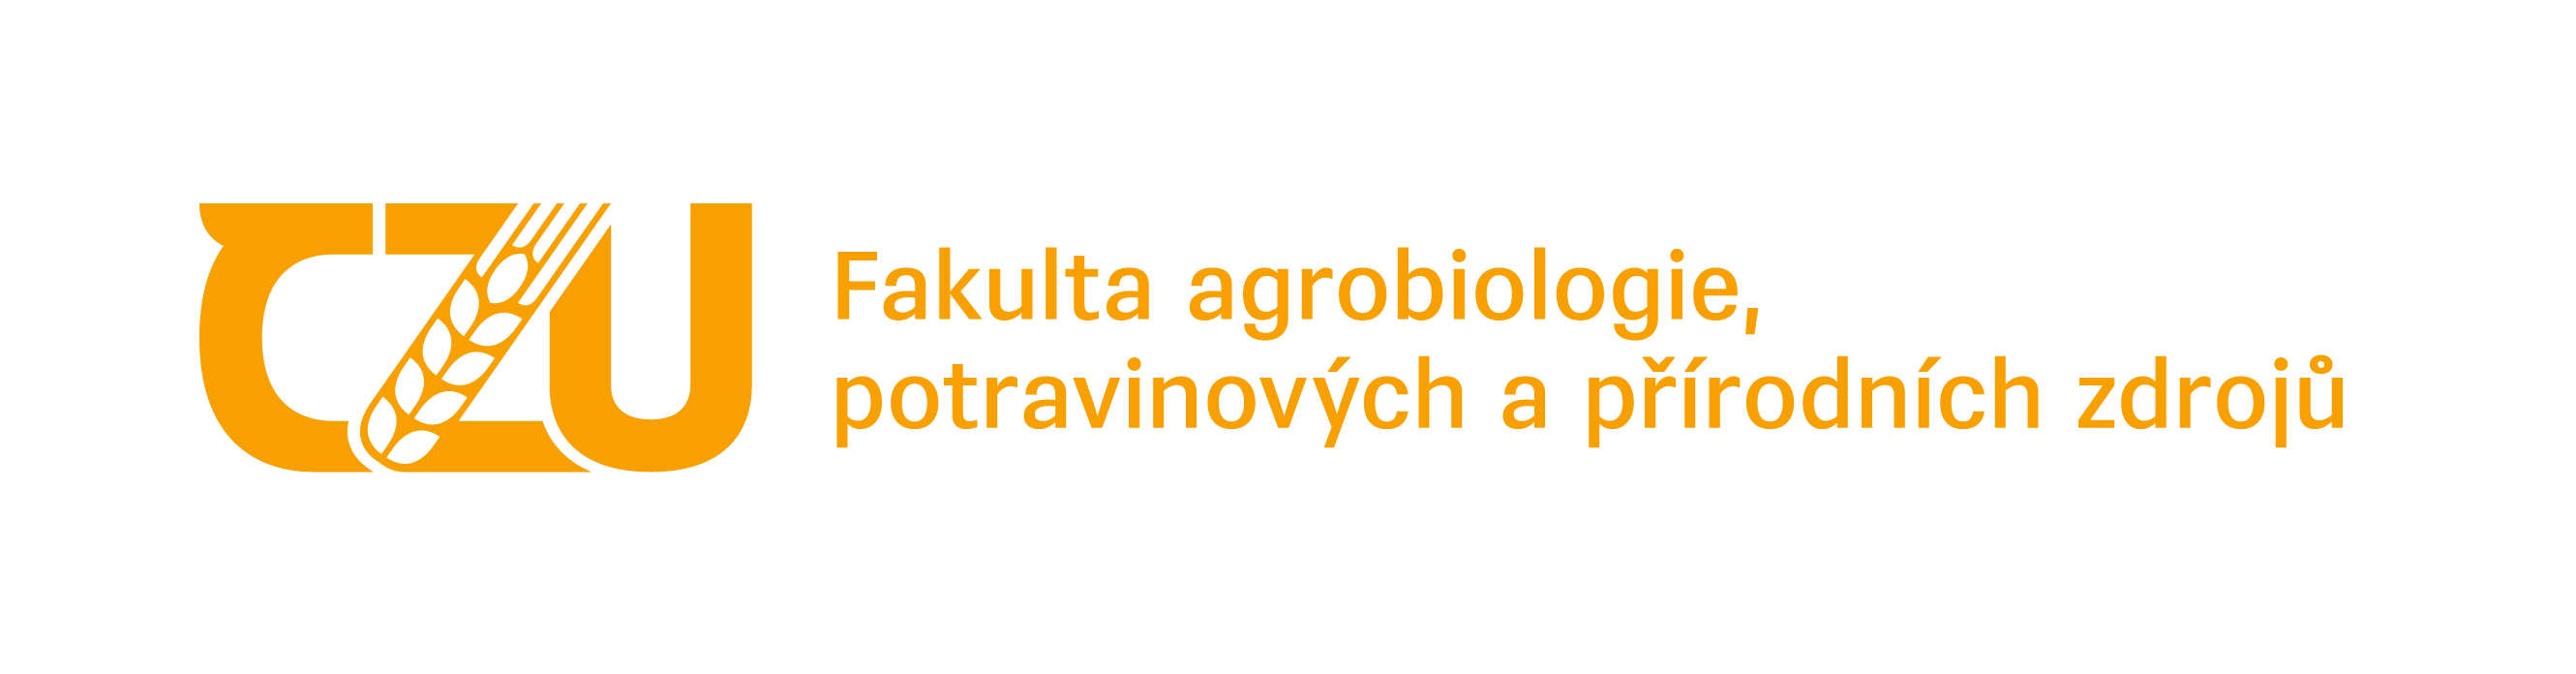 Fakulta agrobiologie, potravinových a přírodních zdrojů